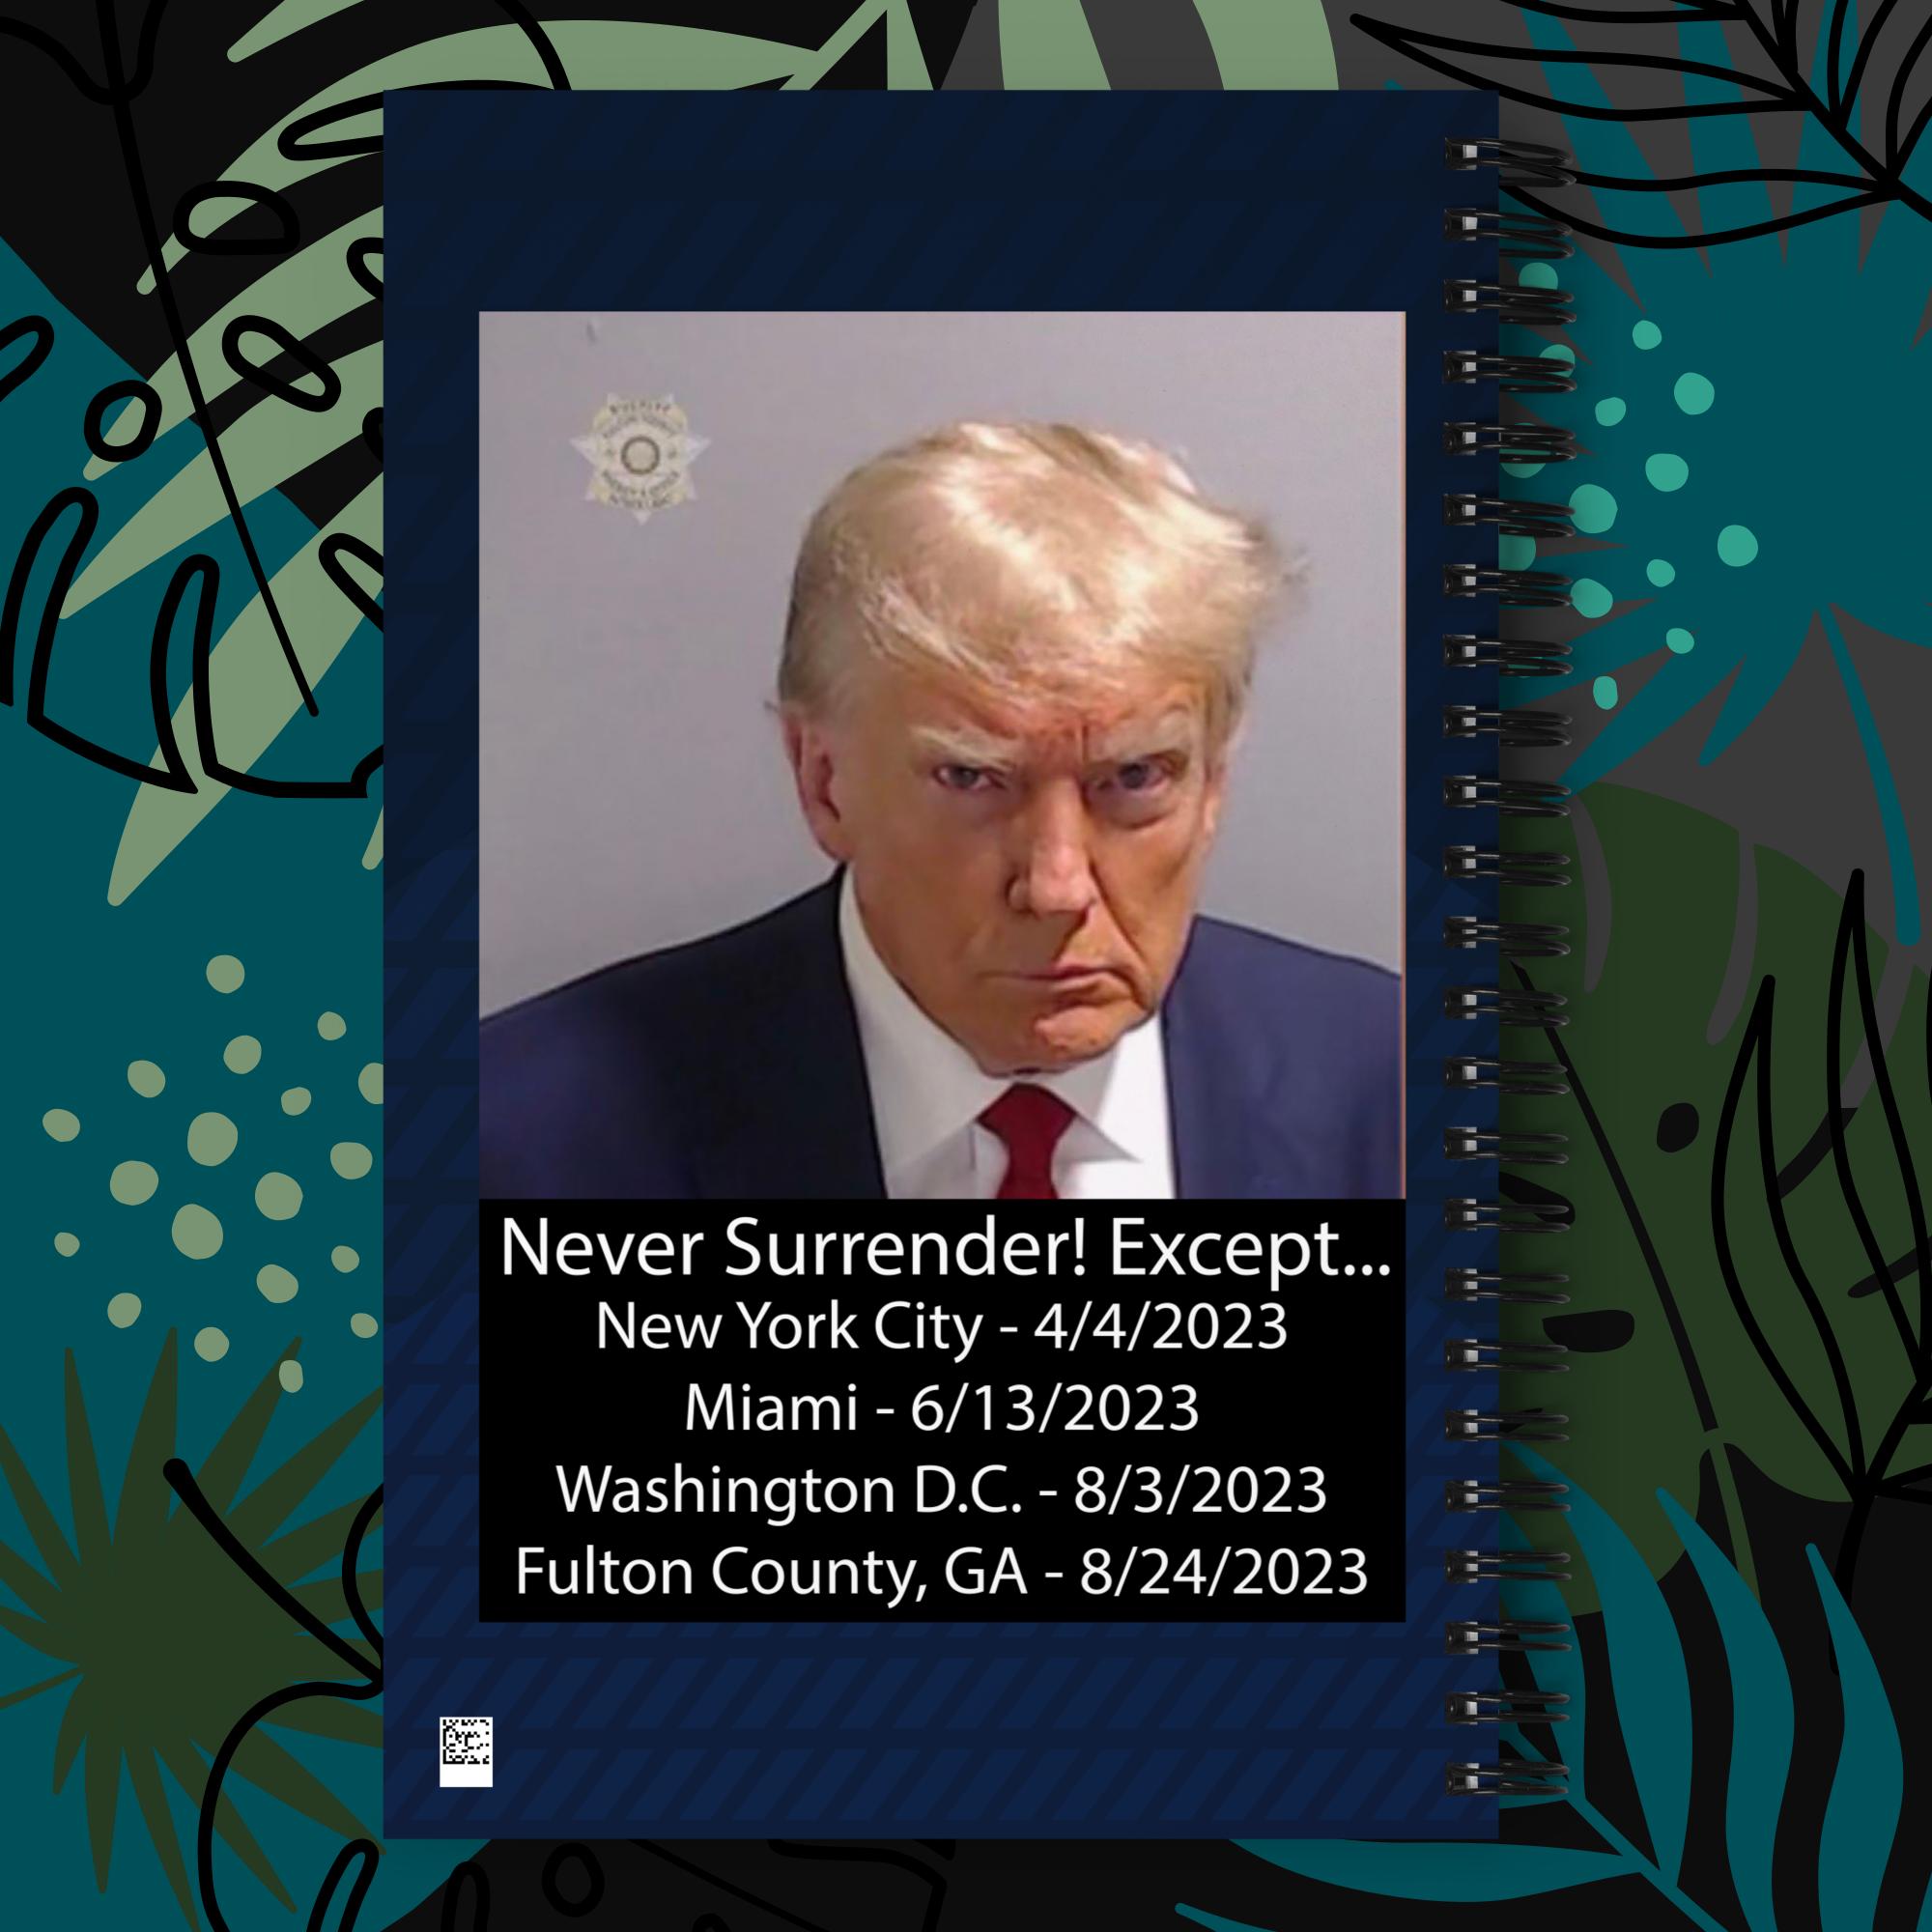 Trump Mug Shot: Never Surrender! Except... He Surrendered Spiral notebook journal notepad